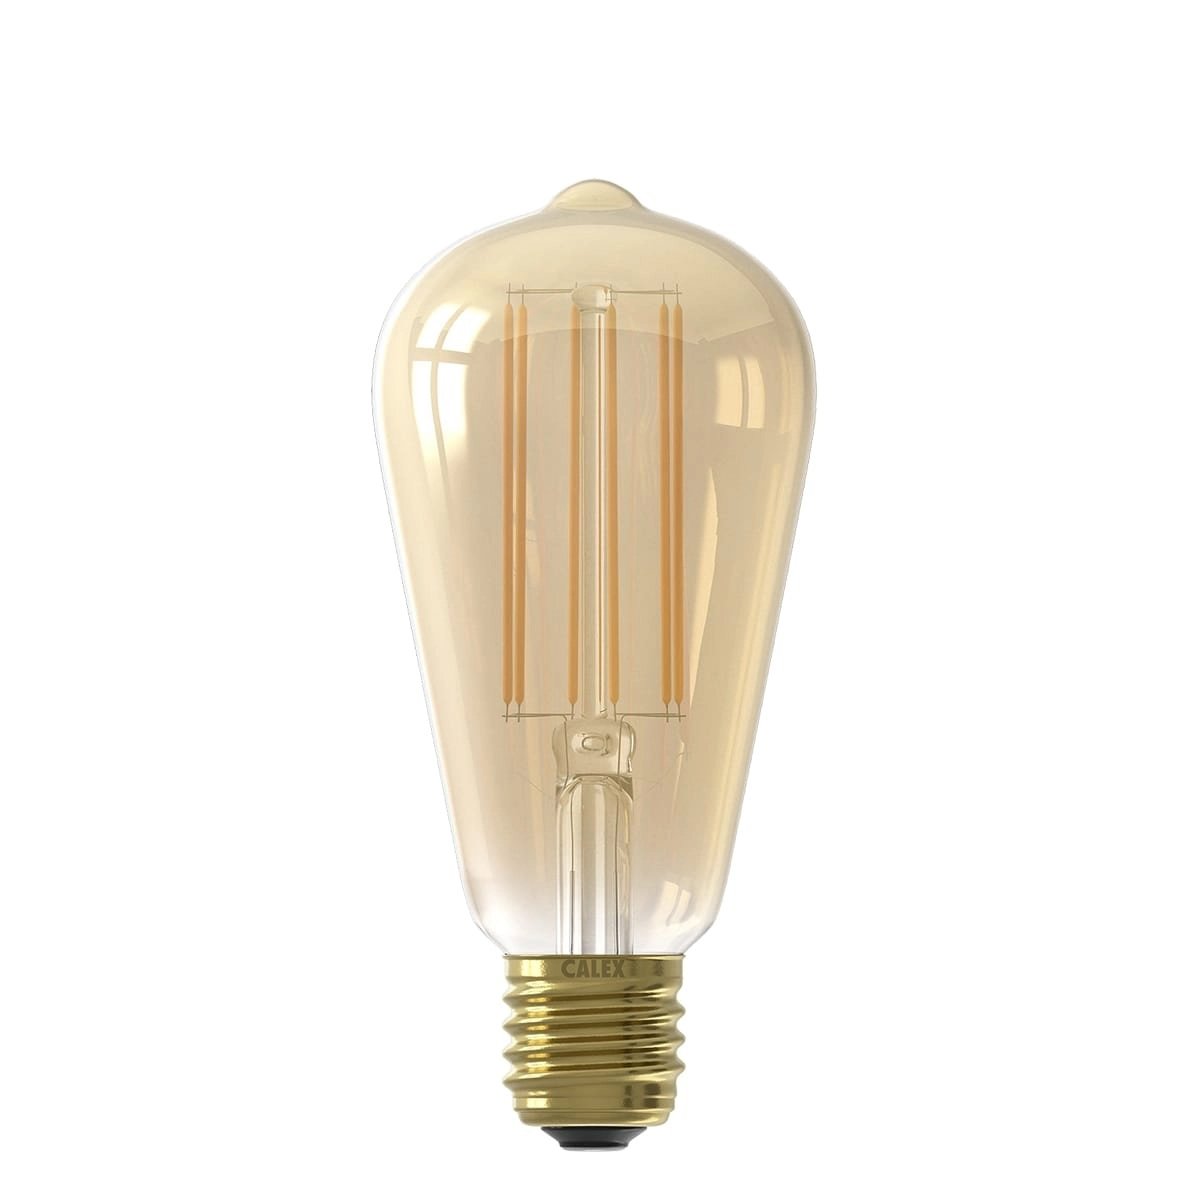 Ledlamp filament Rustic Goud - 4W